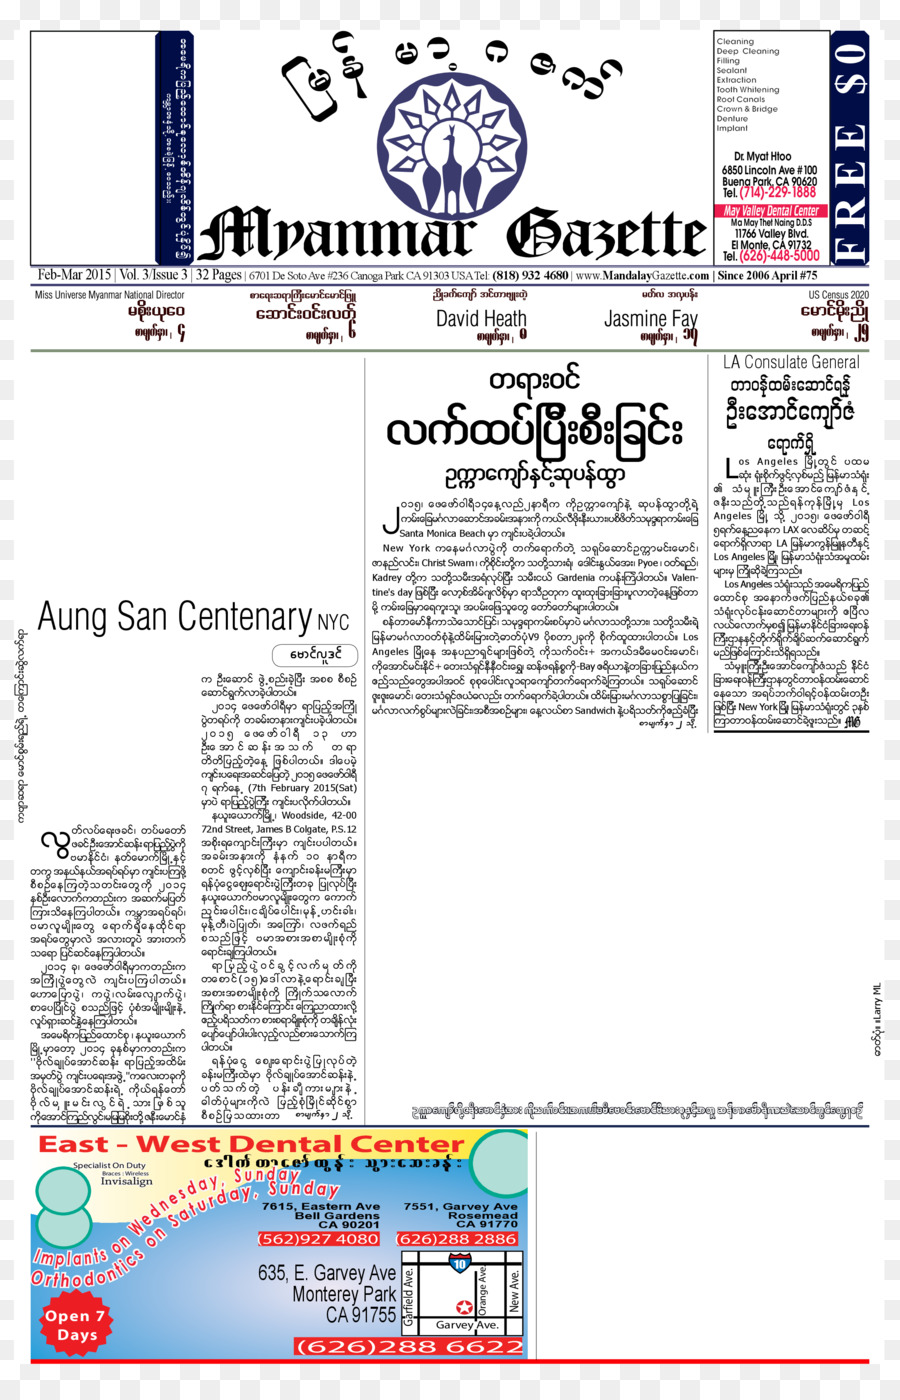 Dokument-Zeitung Mandalay Gazette Veröffentlichung issuu - Gazette